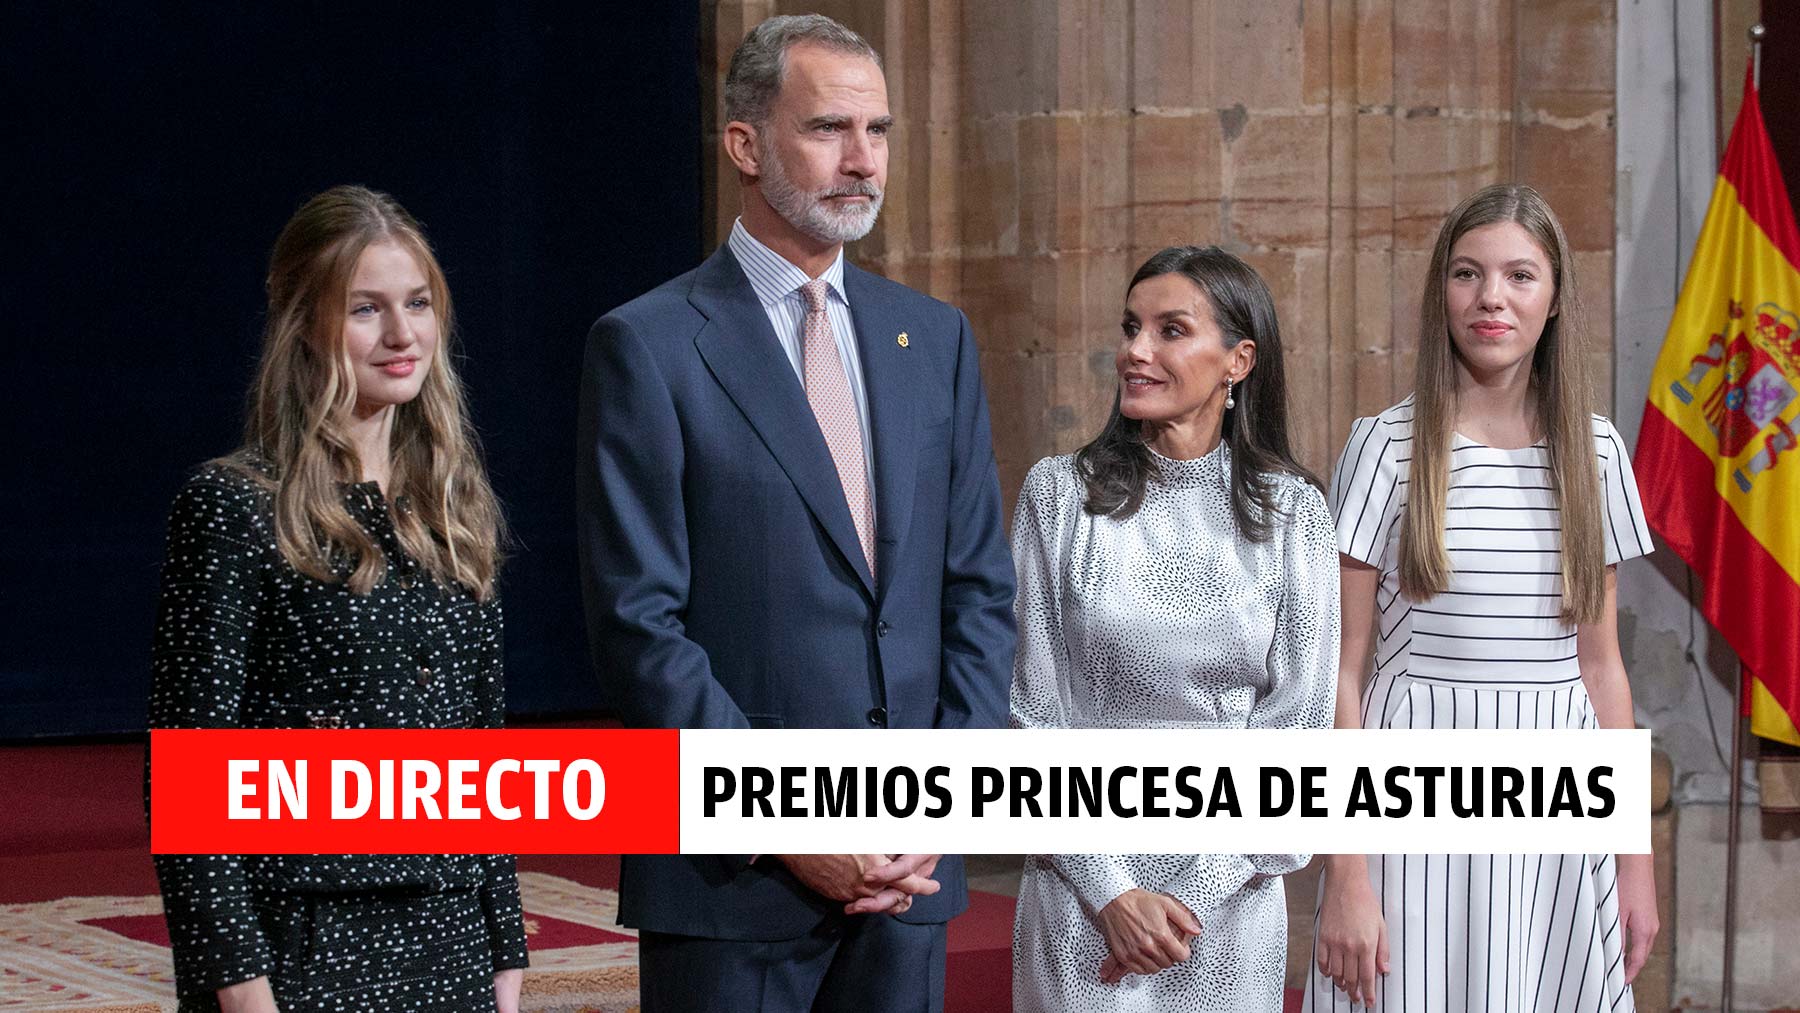 Premios Princesa de Asturias, en directo